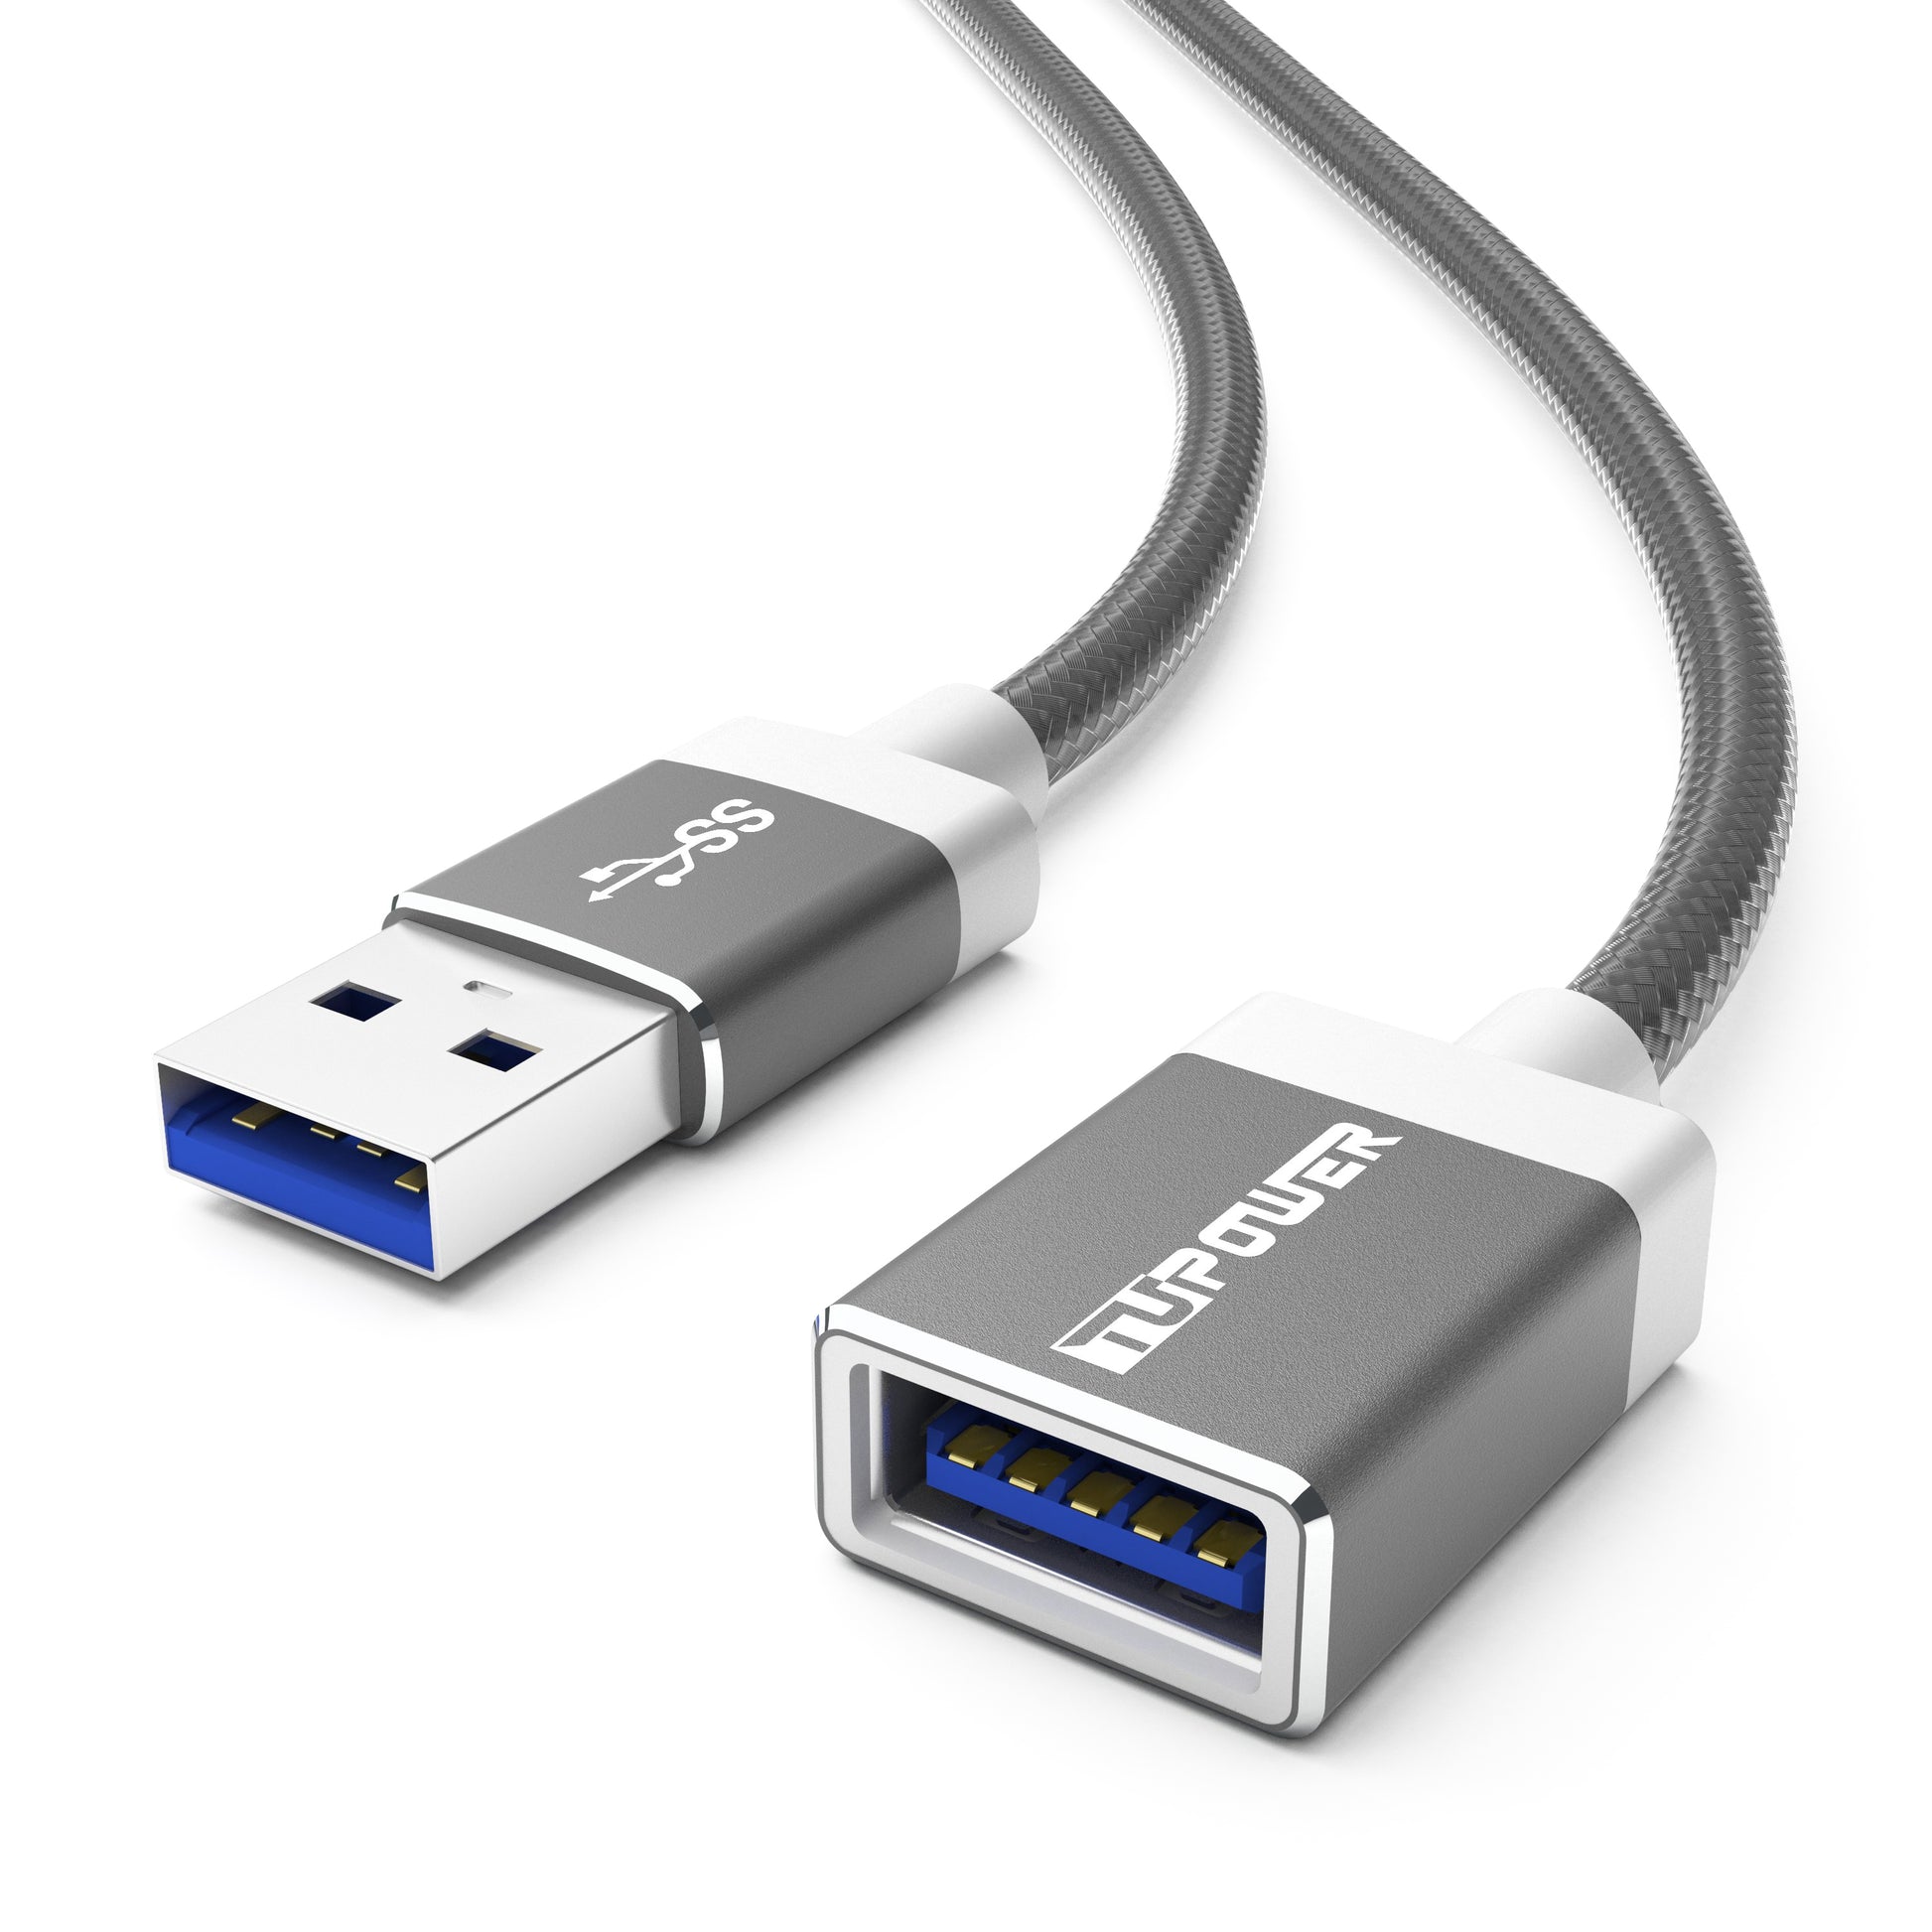 USB Kabel Verlängerung USB 3.0 Verlängerungskabel Stecker auf